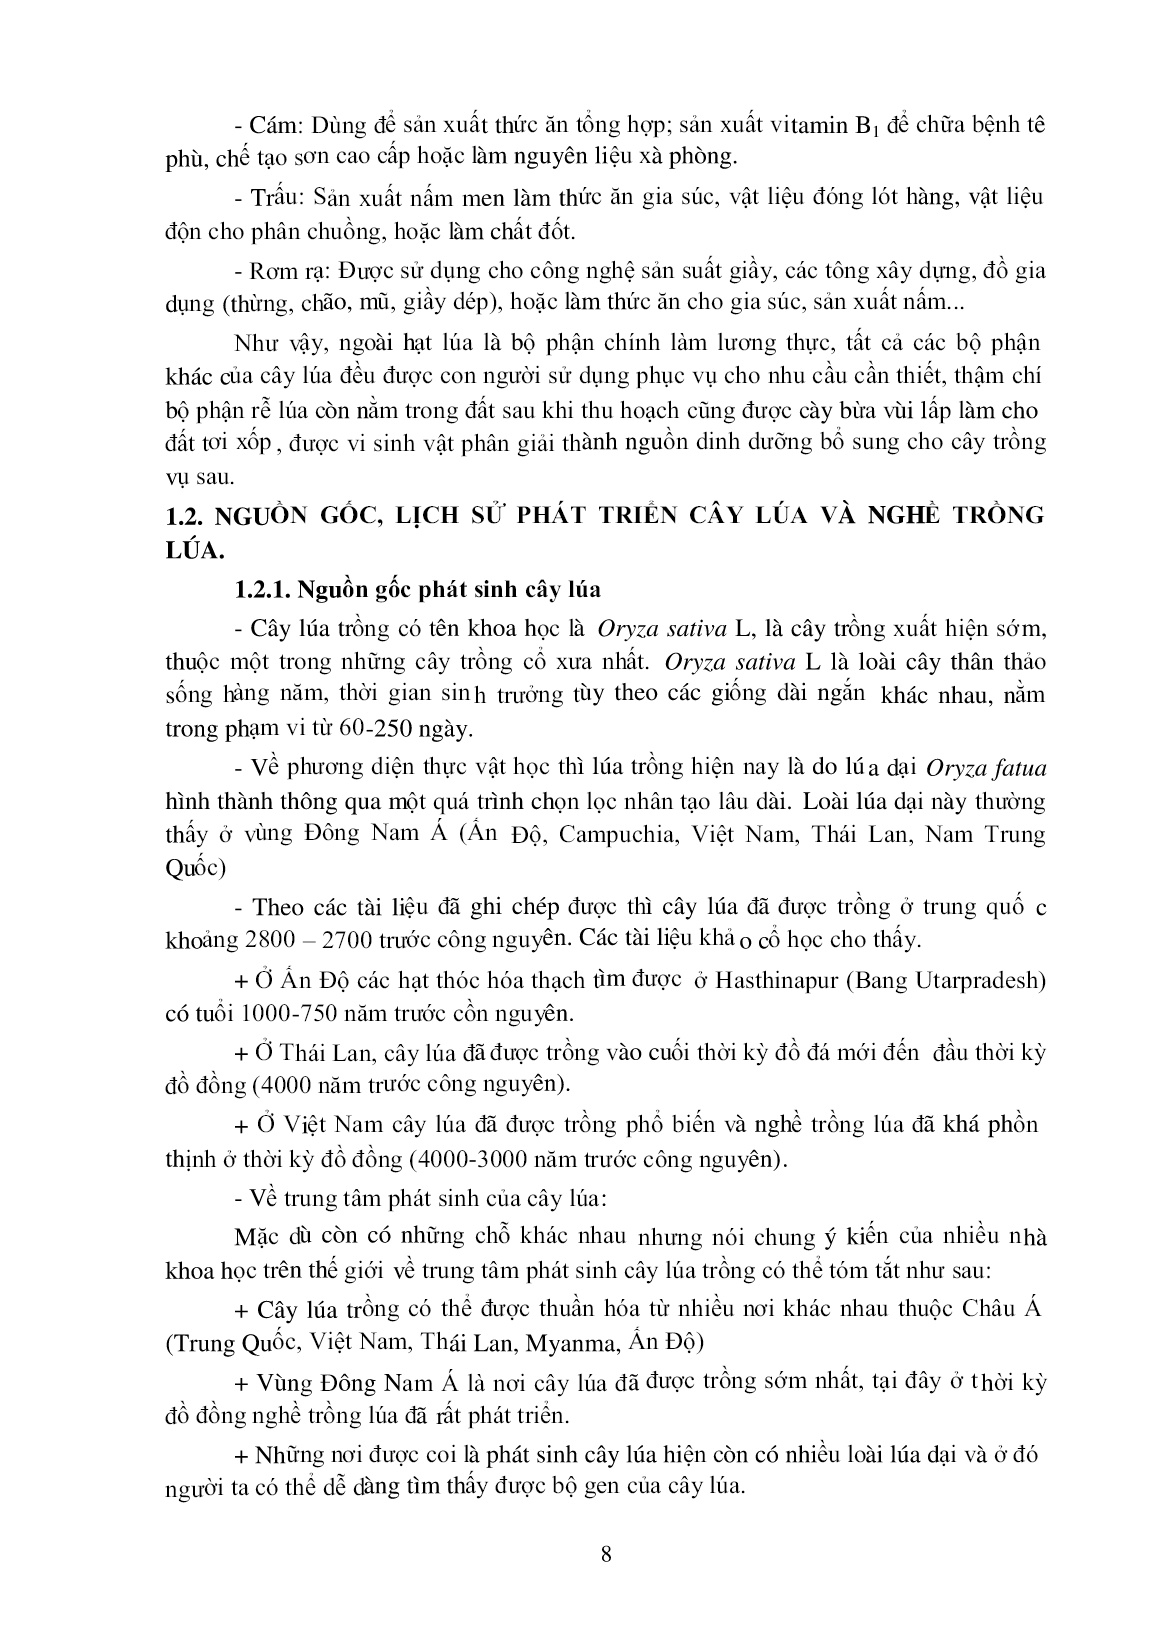 Giáo trình Trồng cây lương thực (Trình độ đào tạo: Cao đẳng, trung cấp) trang 9